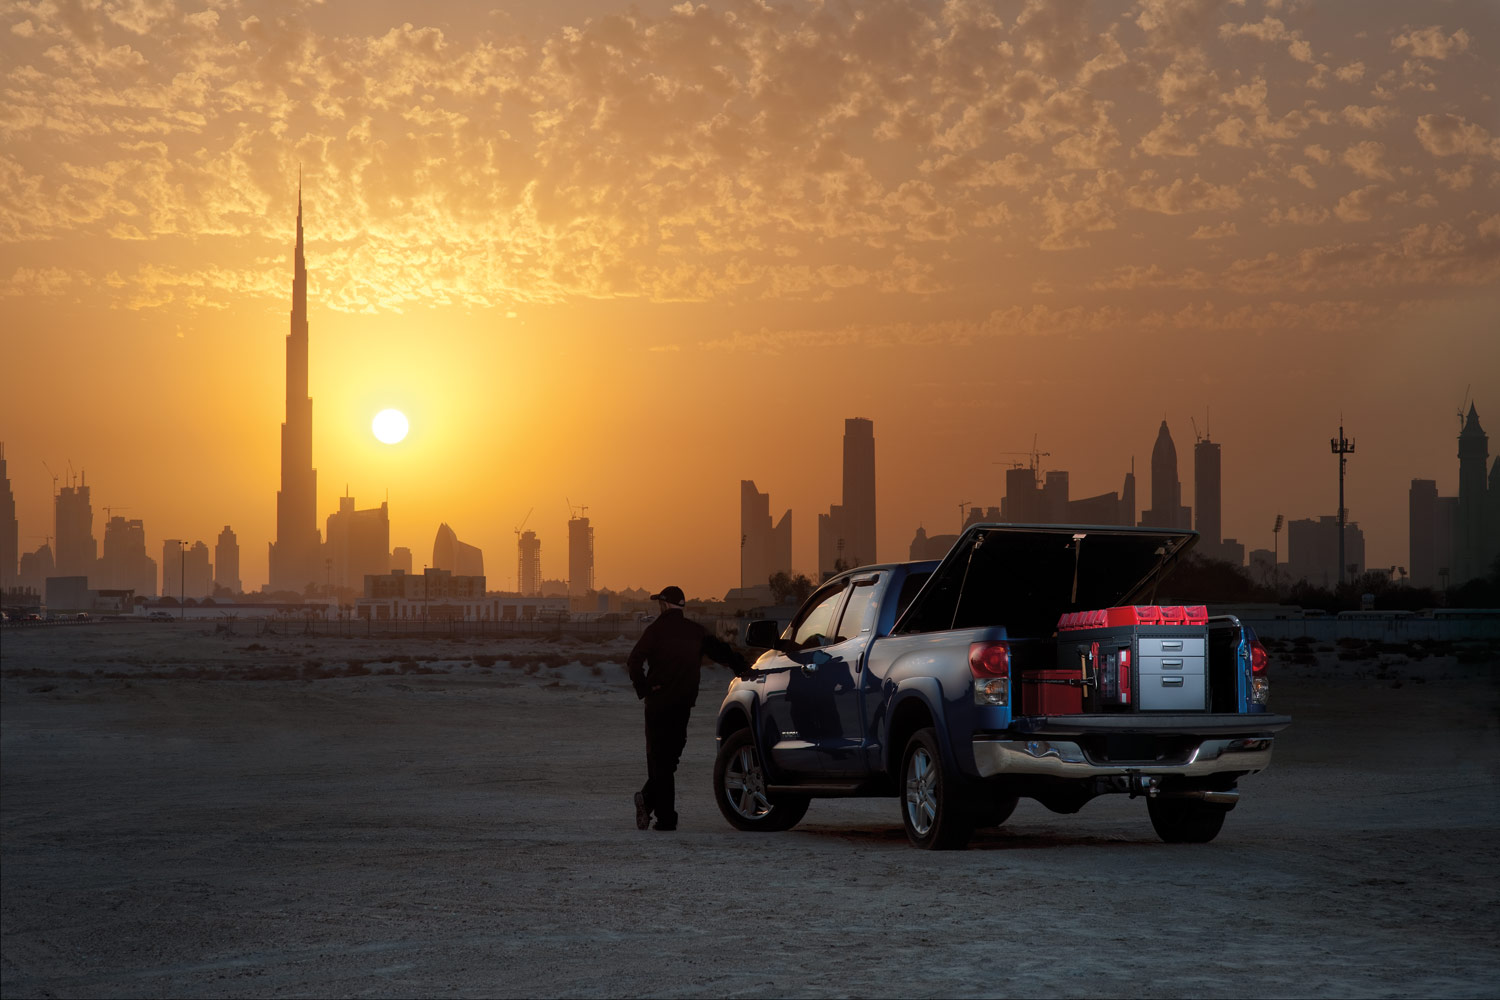 Arbetarens svarta pickup truck med bilinredning från Modul-System i solnedgången i en öken